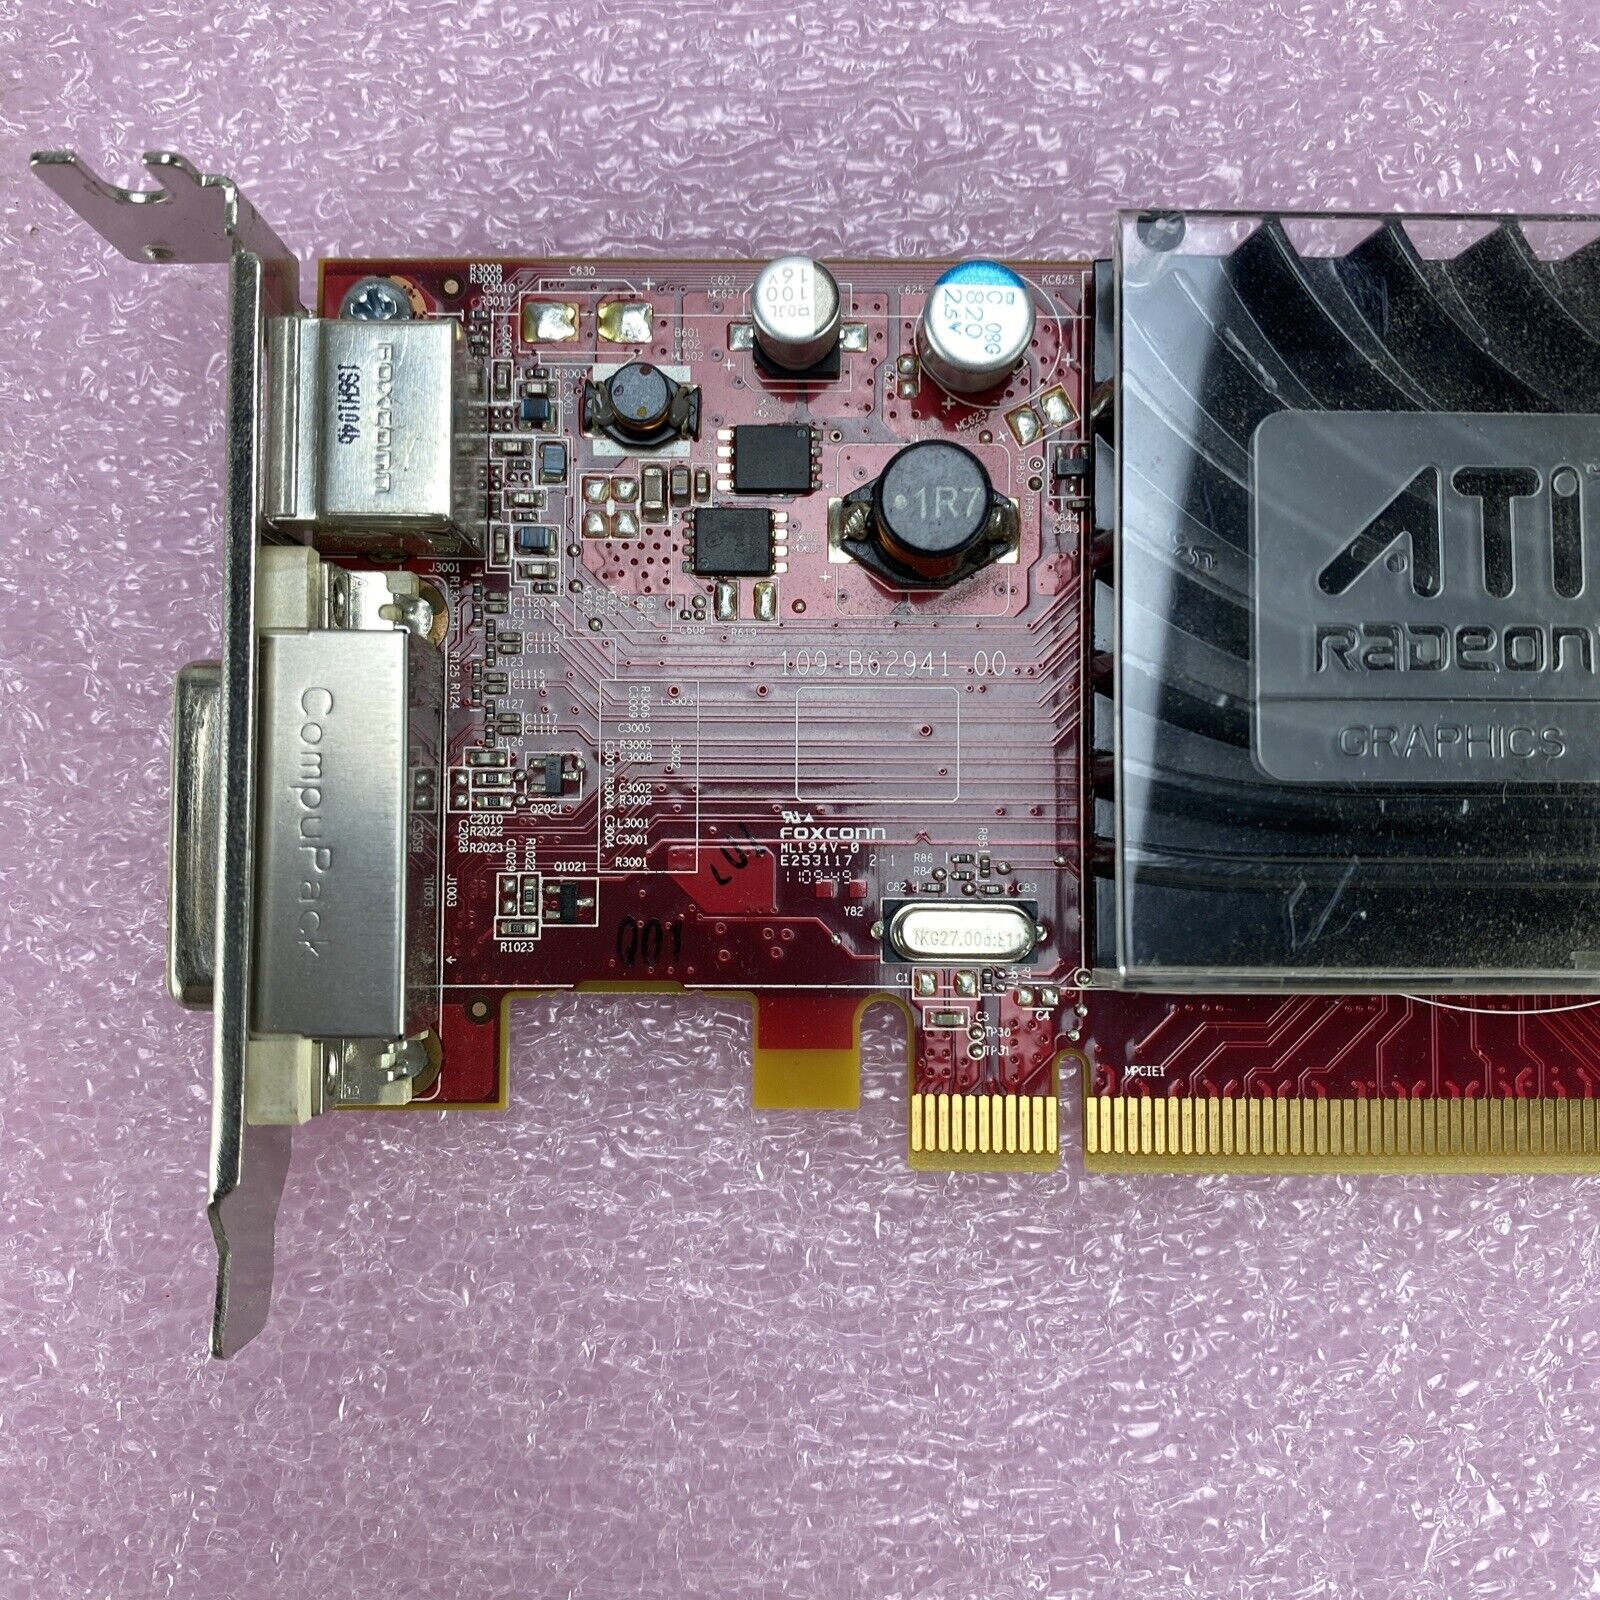 Lot of 5 ATI 109-B62491-00 Radeon HD 3450 256MB DMS-59 S-Video PCIe GPU 0Y103D